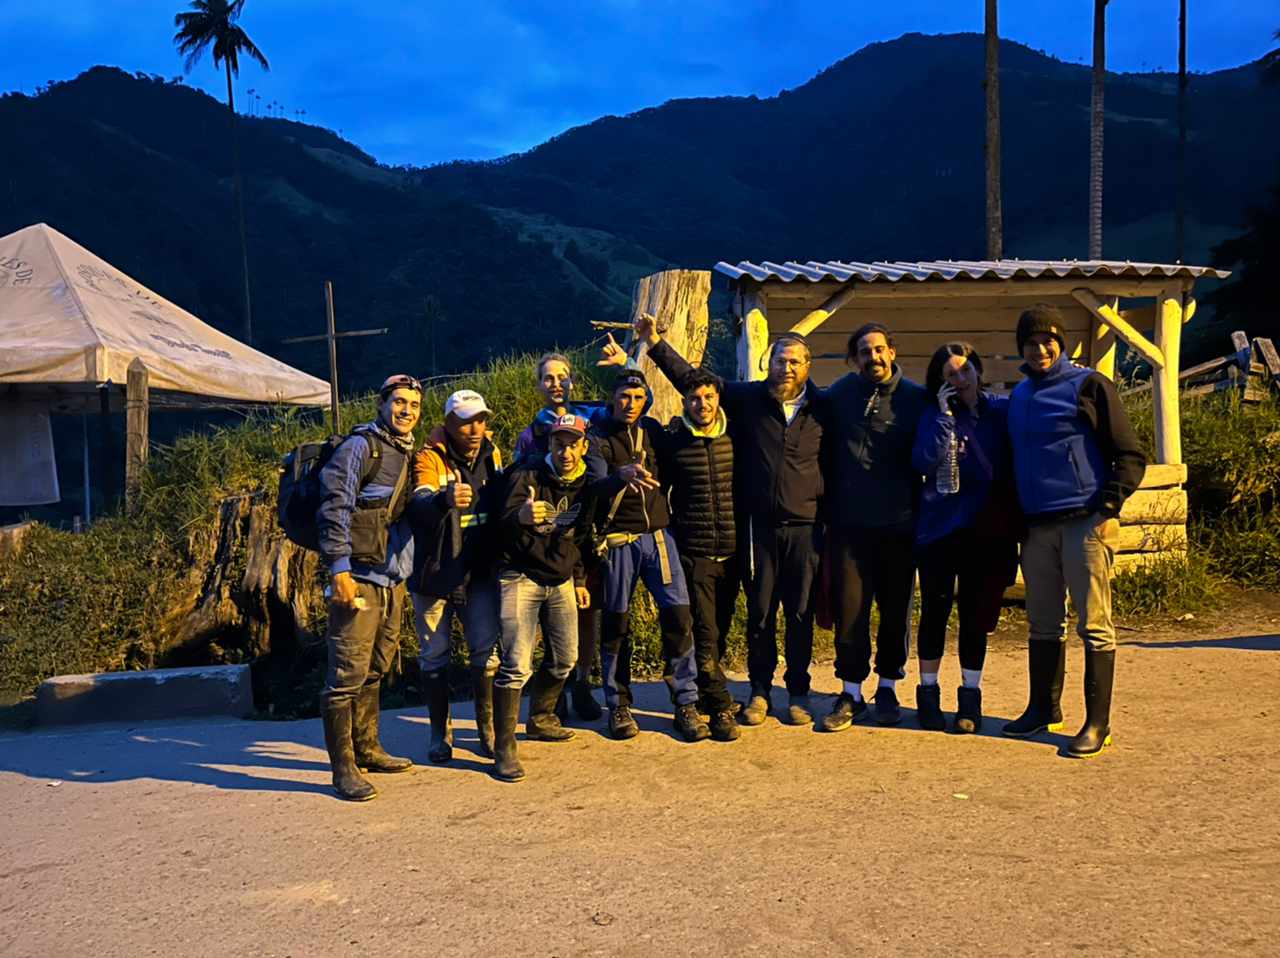 שלושה מטיילים, רבי אחד: מבצע החילוץ הדרמטי בקולומביה